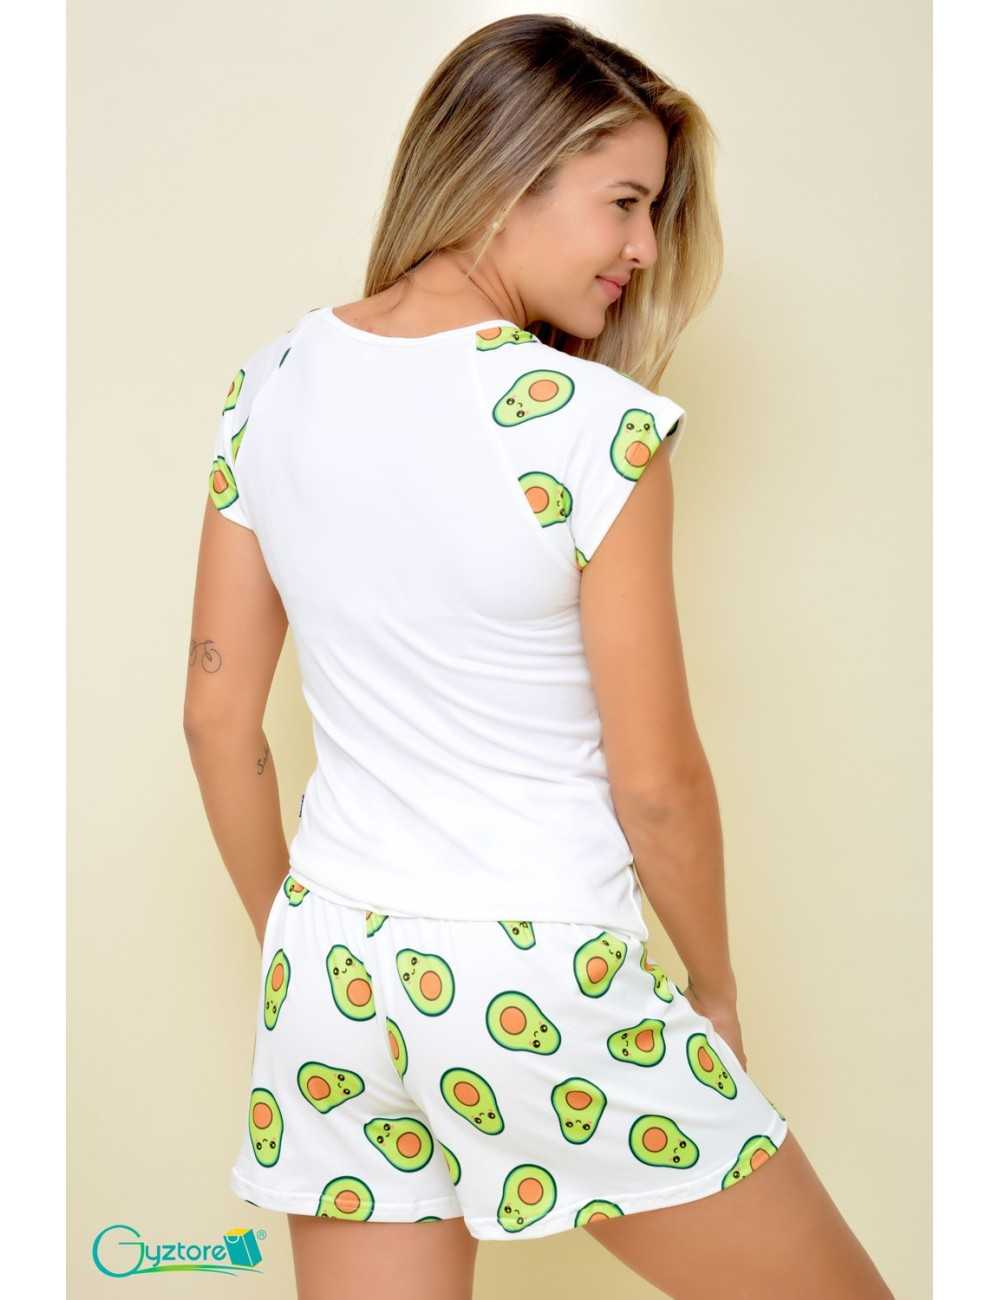 Pijamas "Avocado lover"